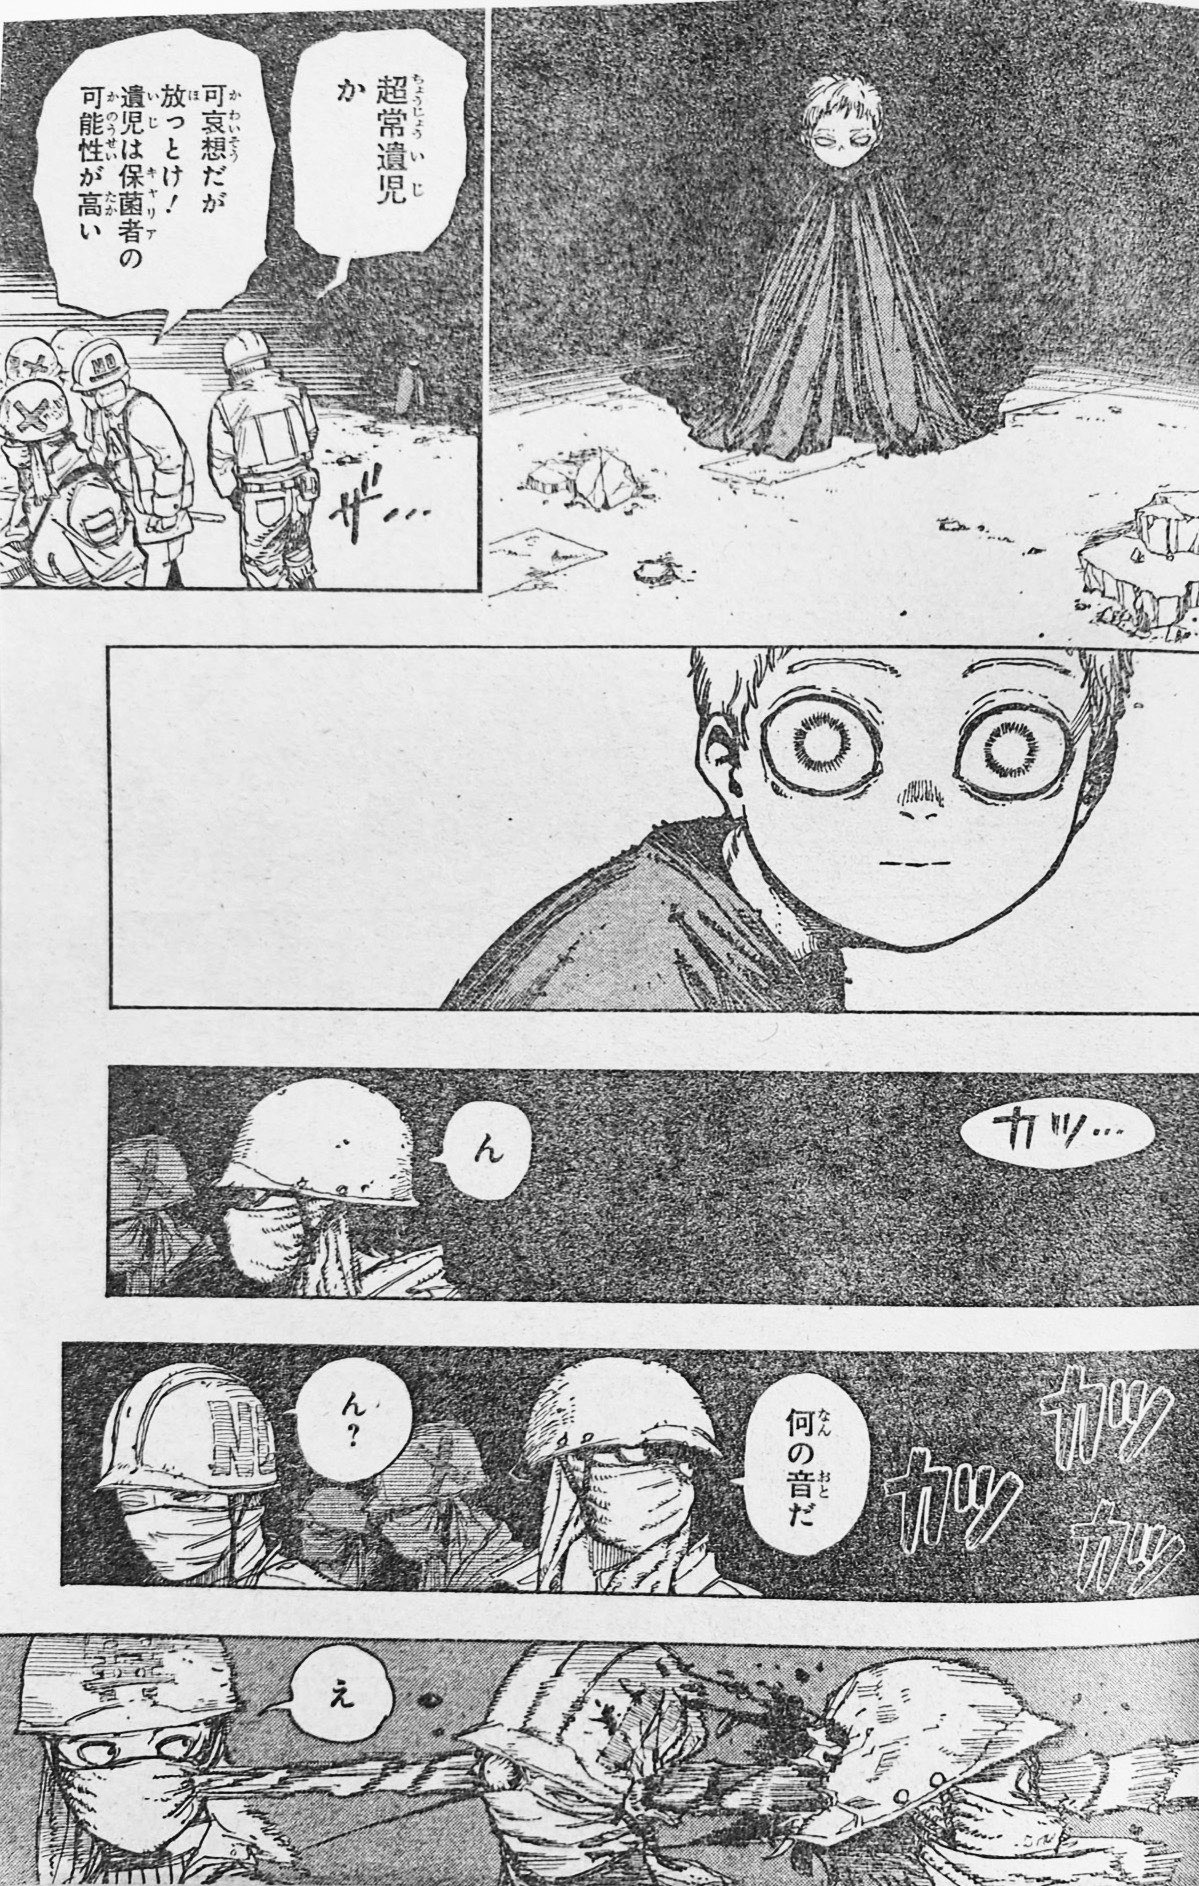 Lumiim Art on X: My Hero Academia Manga 407!! All For one child